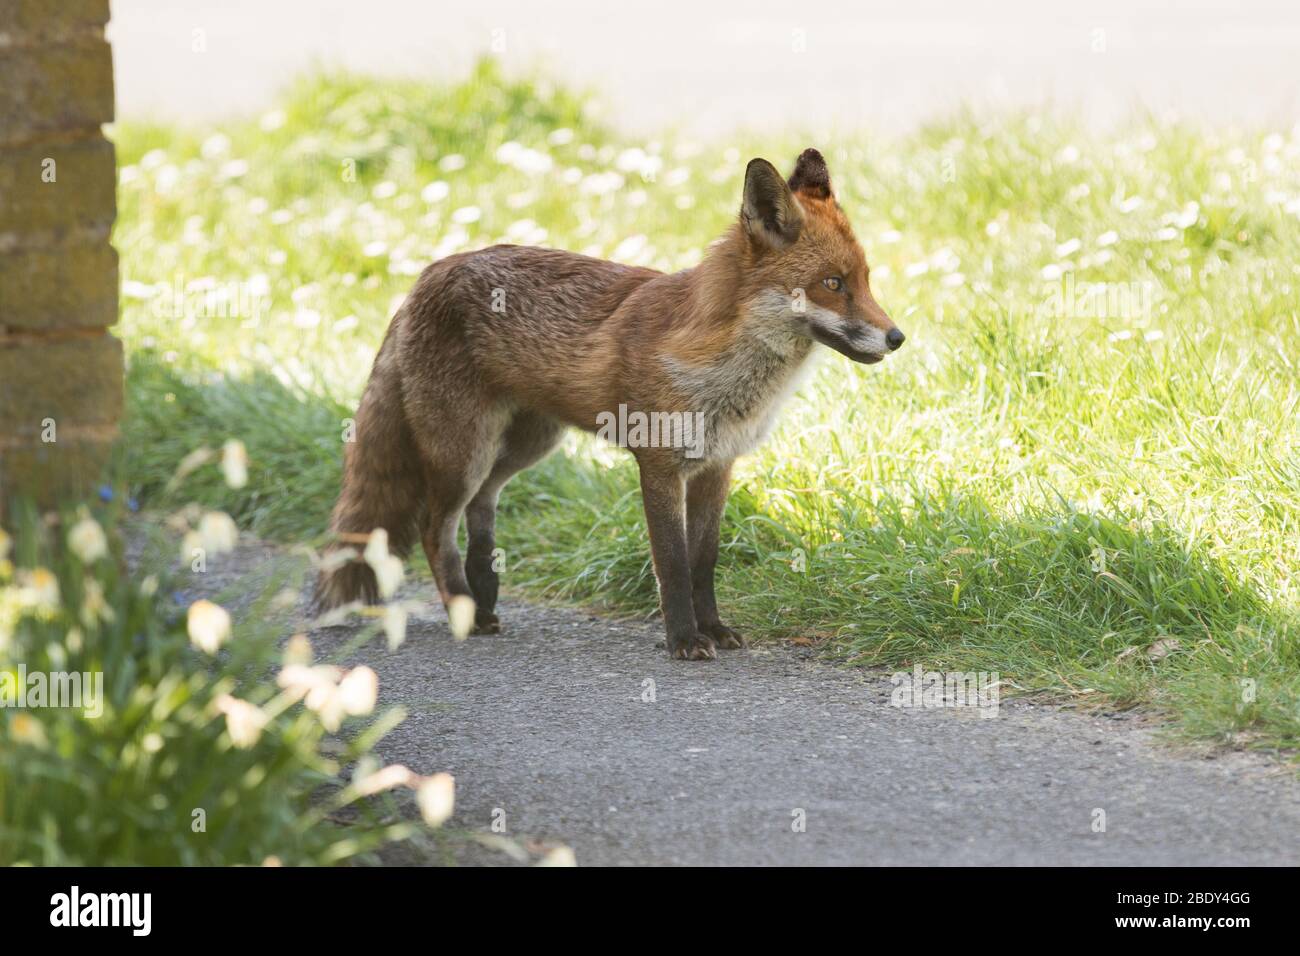 Ein Fuchs patrouilliert durch die Straßen von Brentwood, Essex, Großbritannien. Füchse sind heute in städtischen Gebieten im Vereinigten Königreich verbreitet. Stockfoto